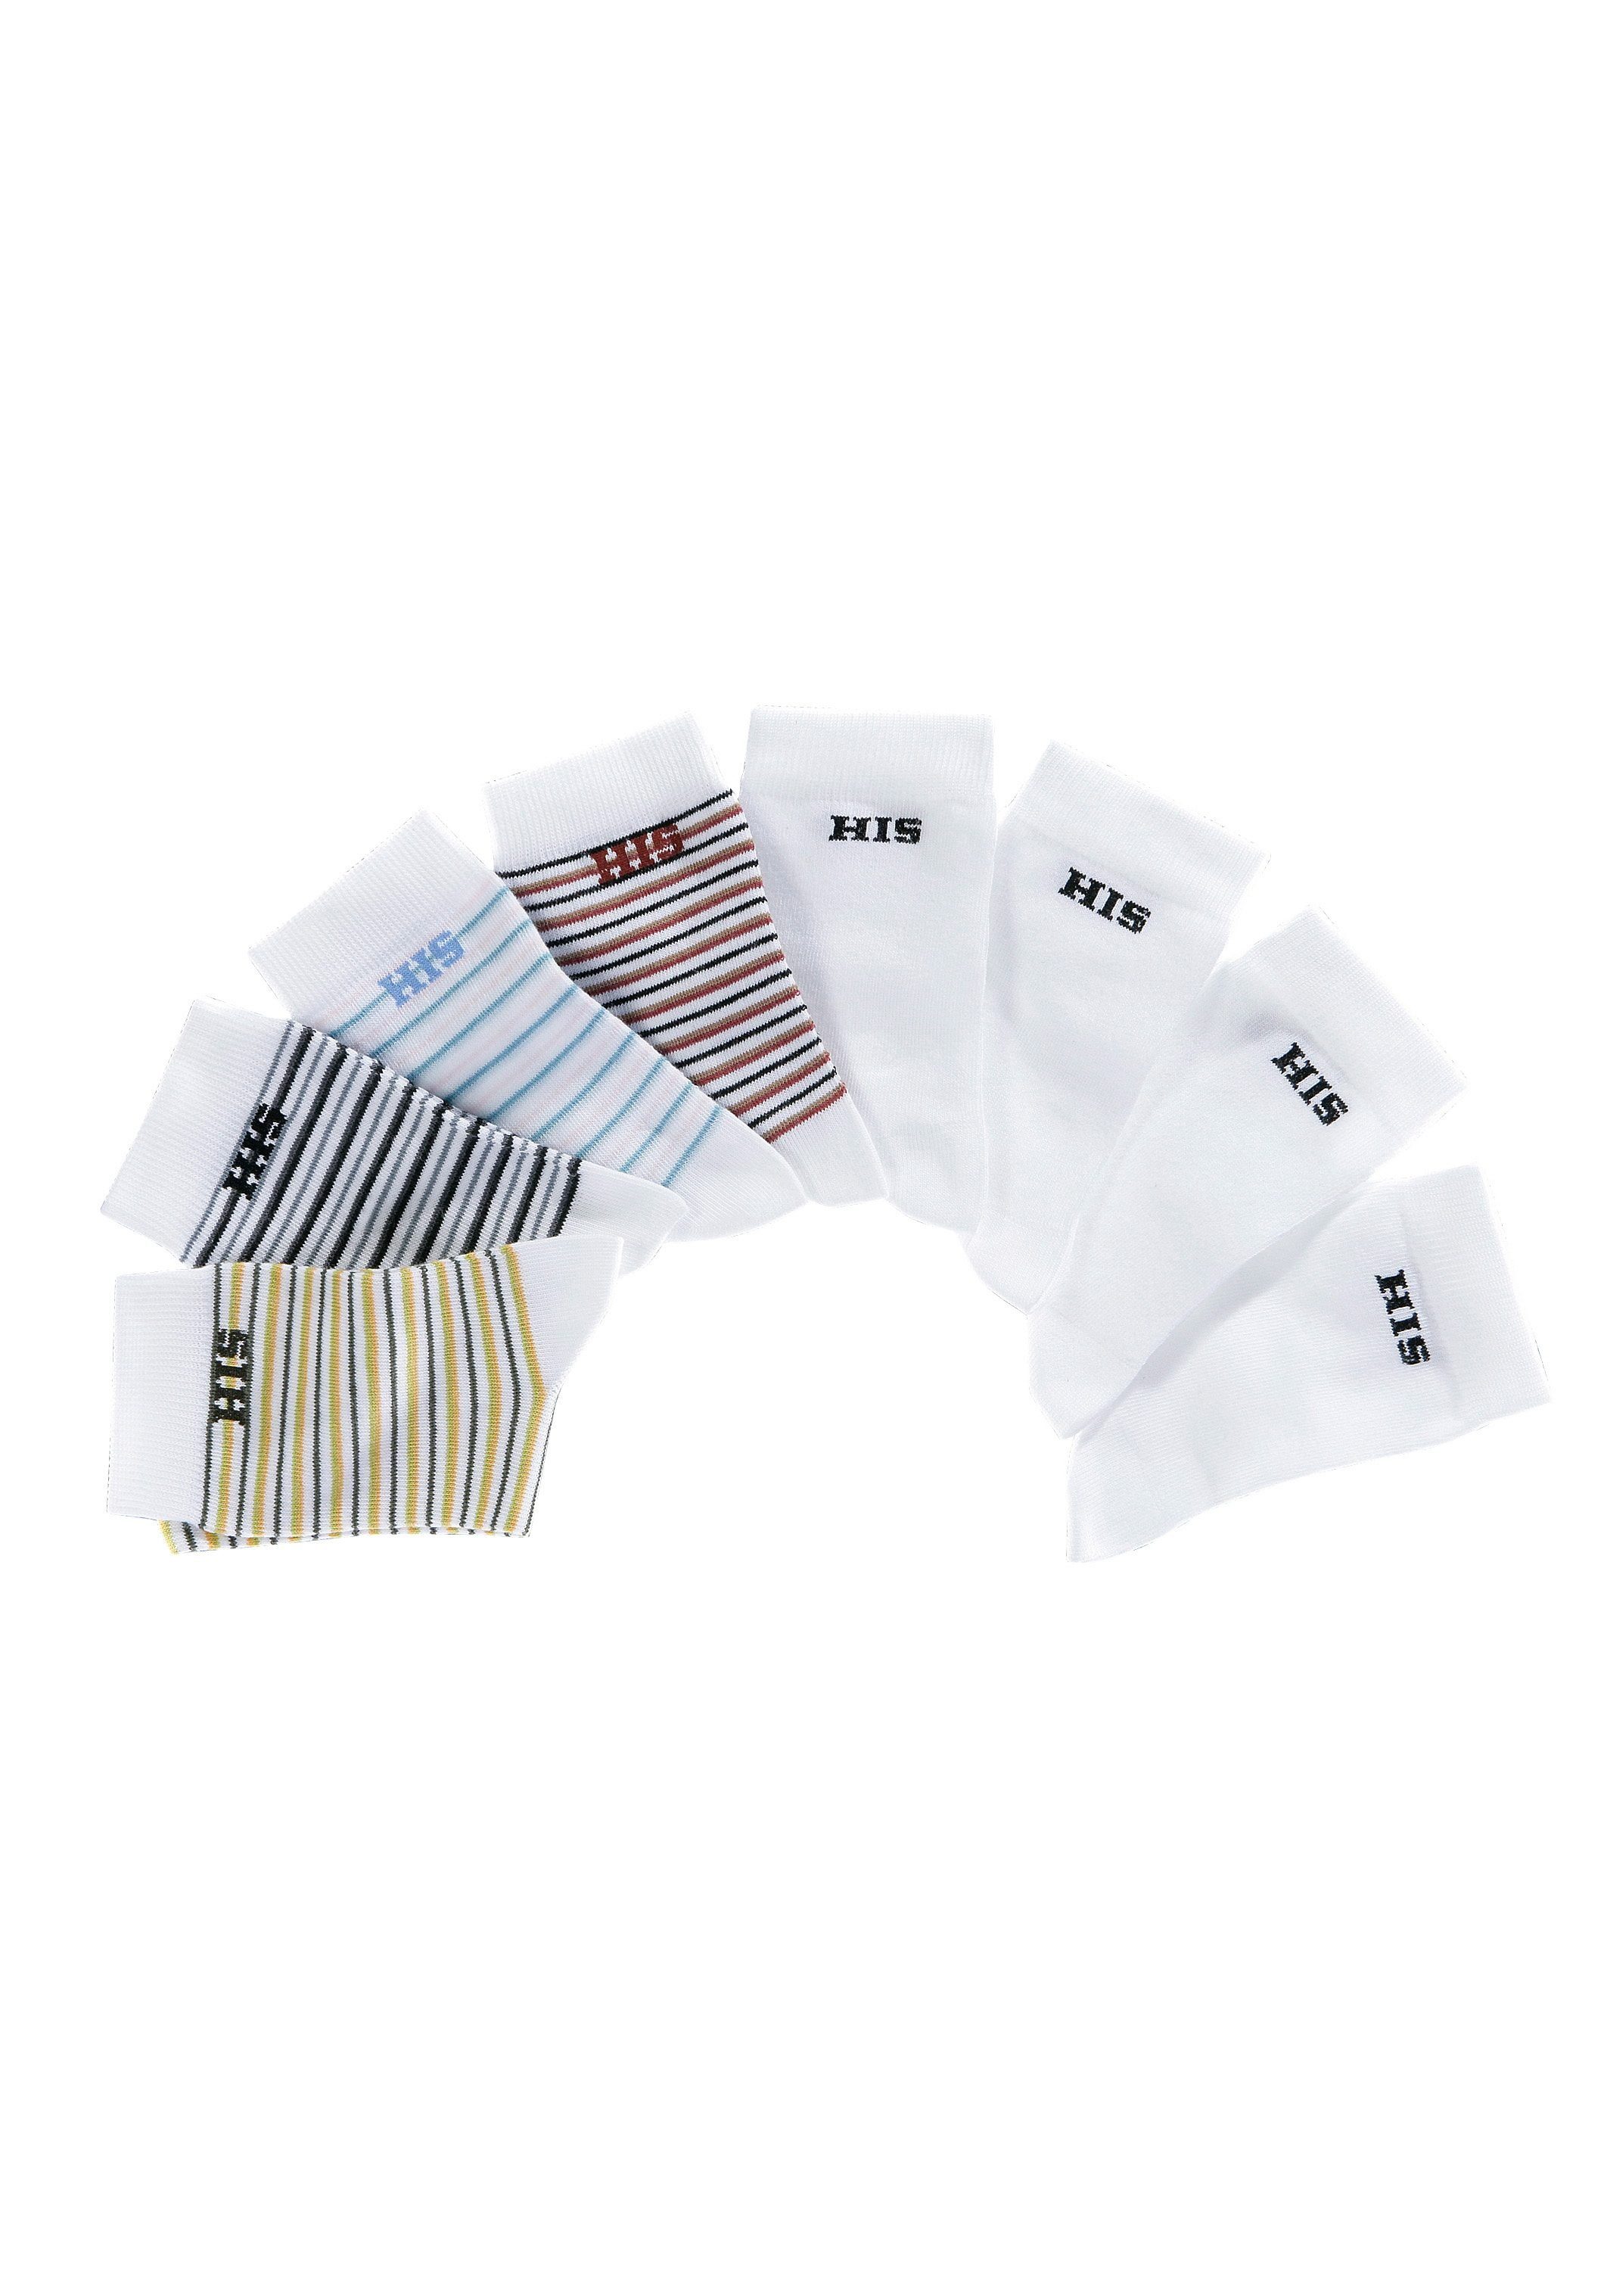 H.I.S Socken (Set, 8-Paar) geringelt unifarben bunt-weiß und